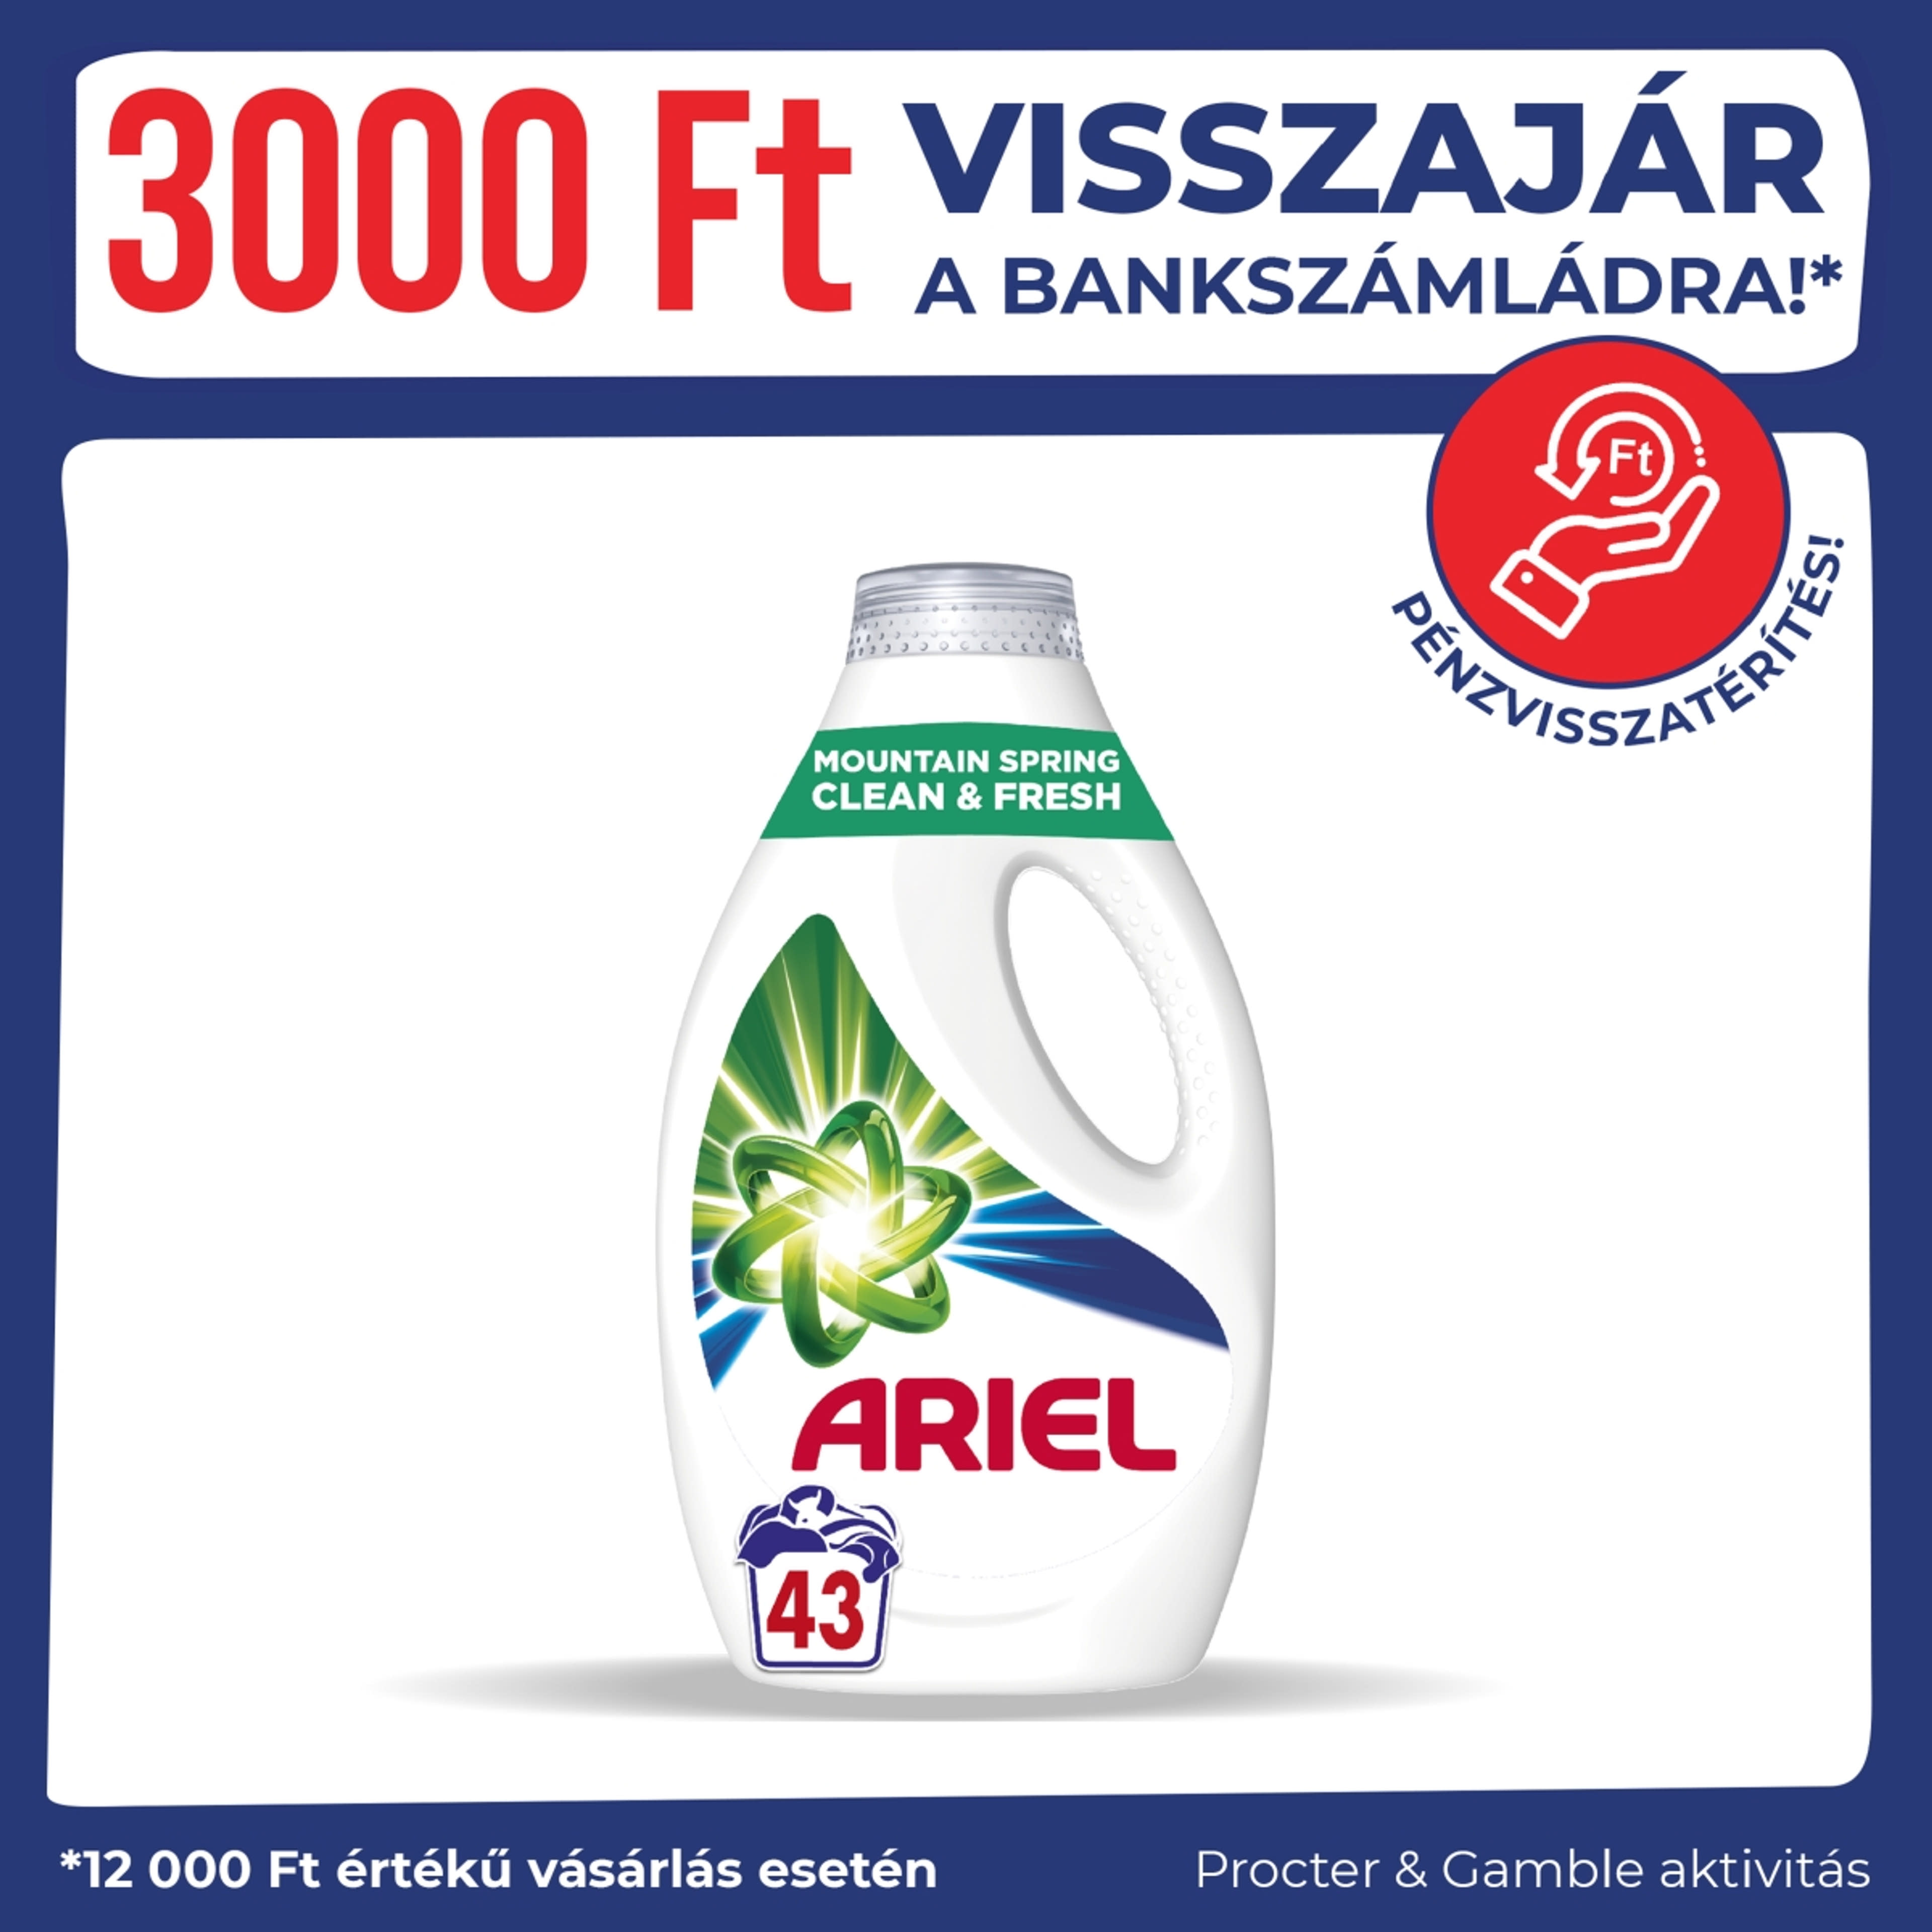 Ariel Mountain Spring Clean & Fresh folyékony mosószer, 43 mosáshoz - 2150 ml